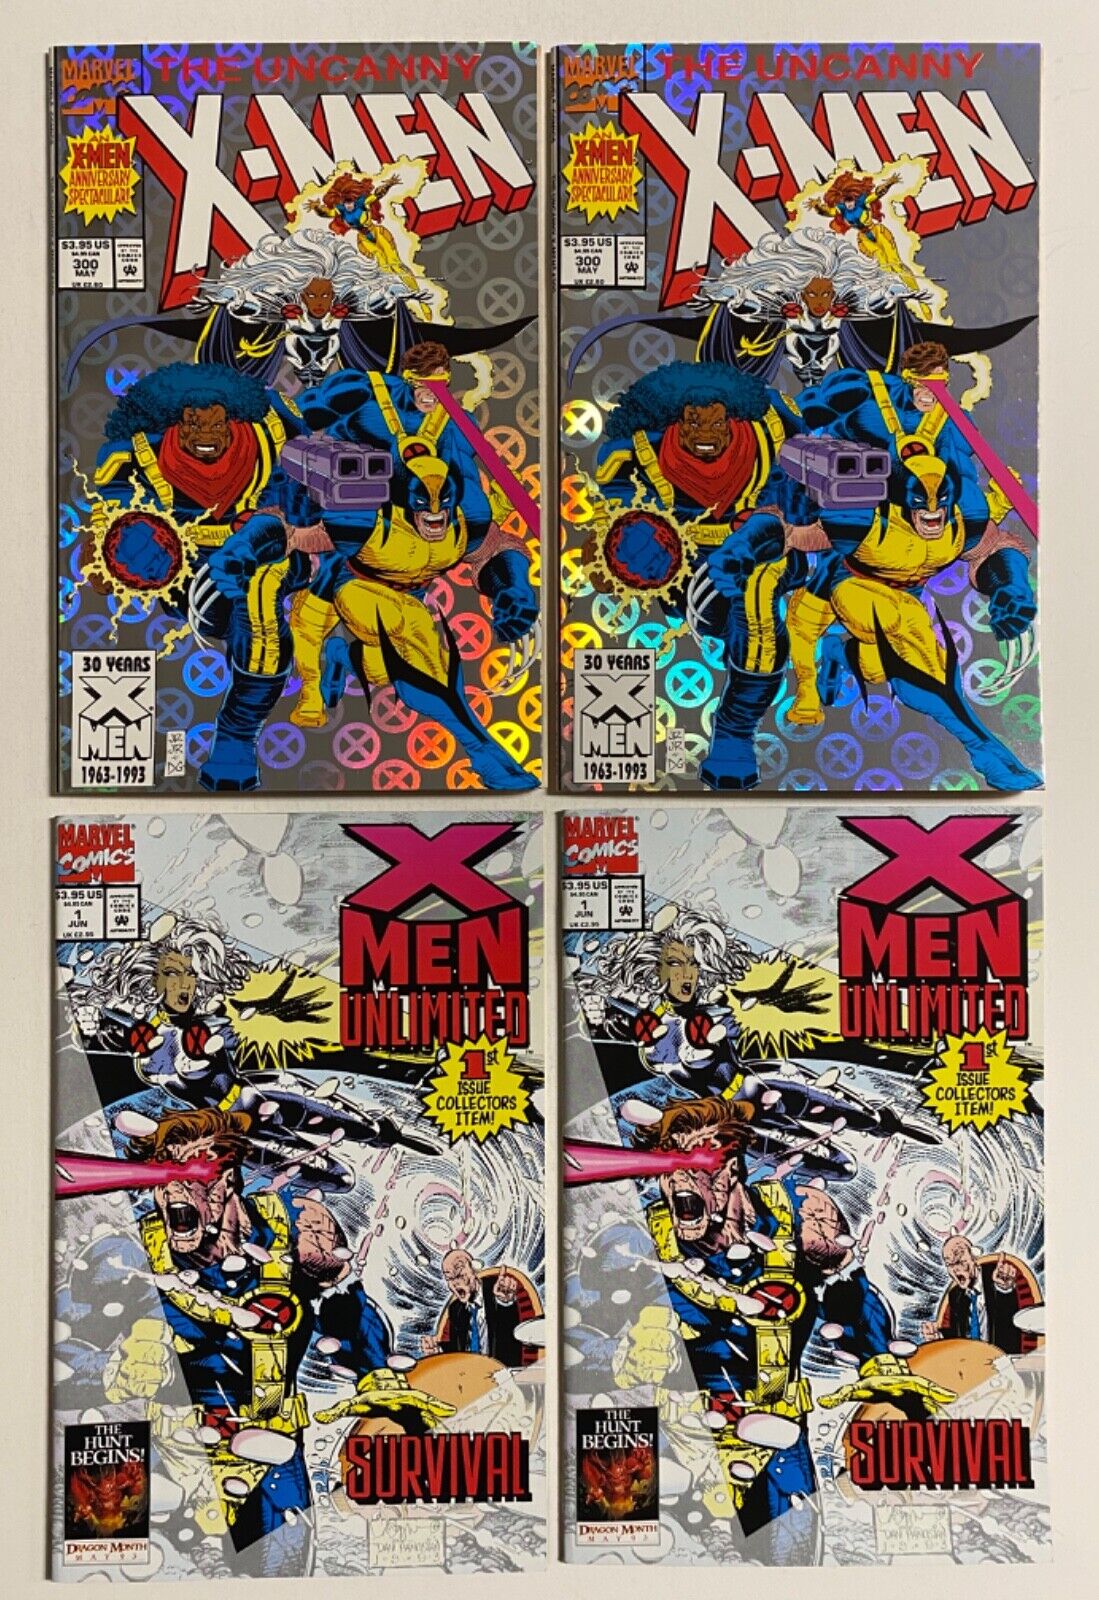 THE UNCANNY X-MEN  #300  ( x2 ) ,  X-MEN UNLIMITED  #1  ( x2 ) (lot of 4 comics)